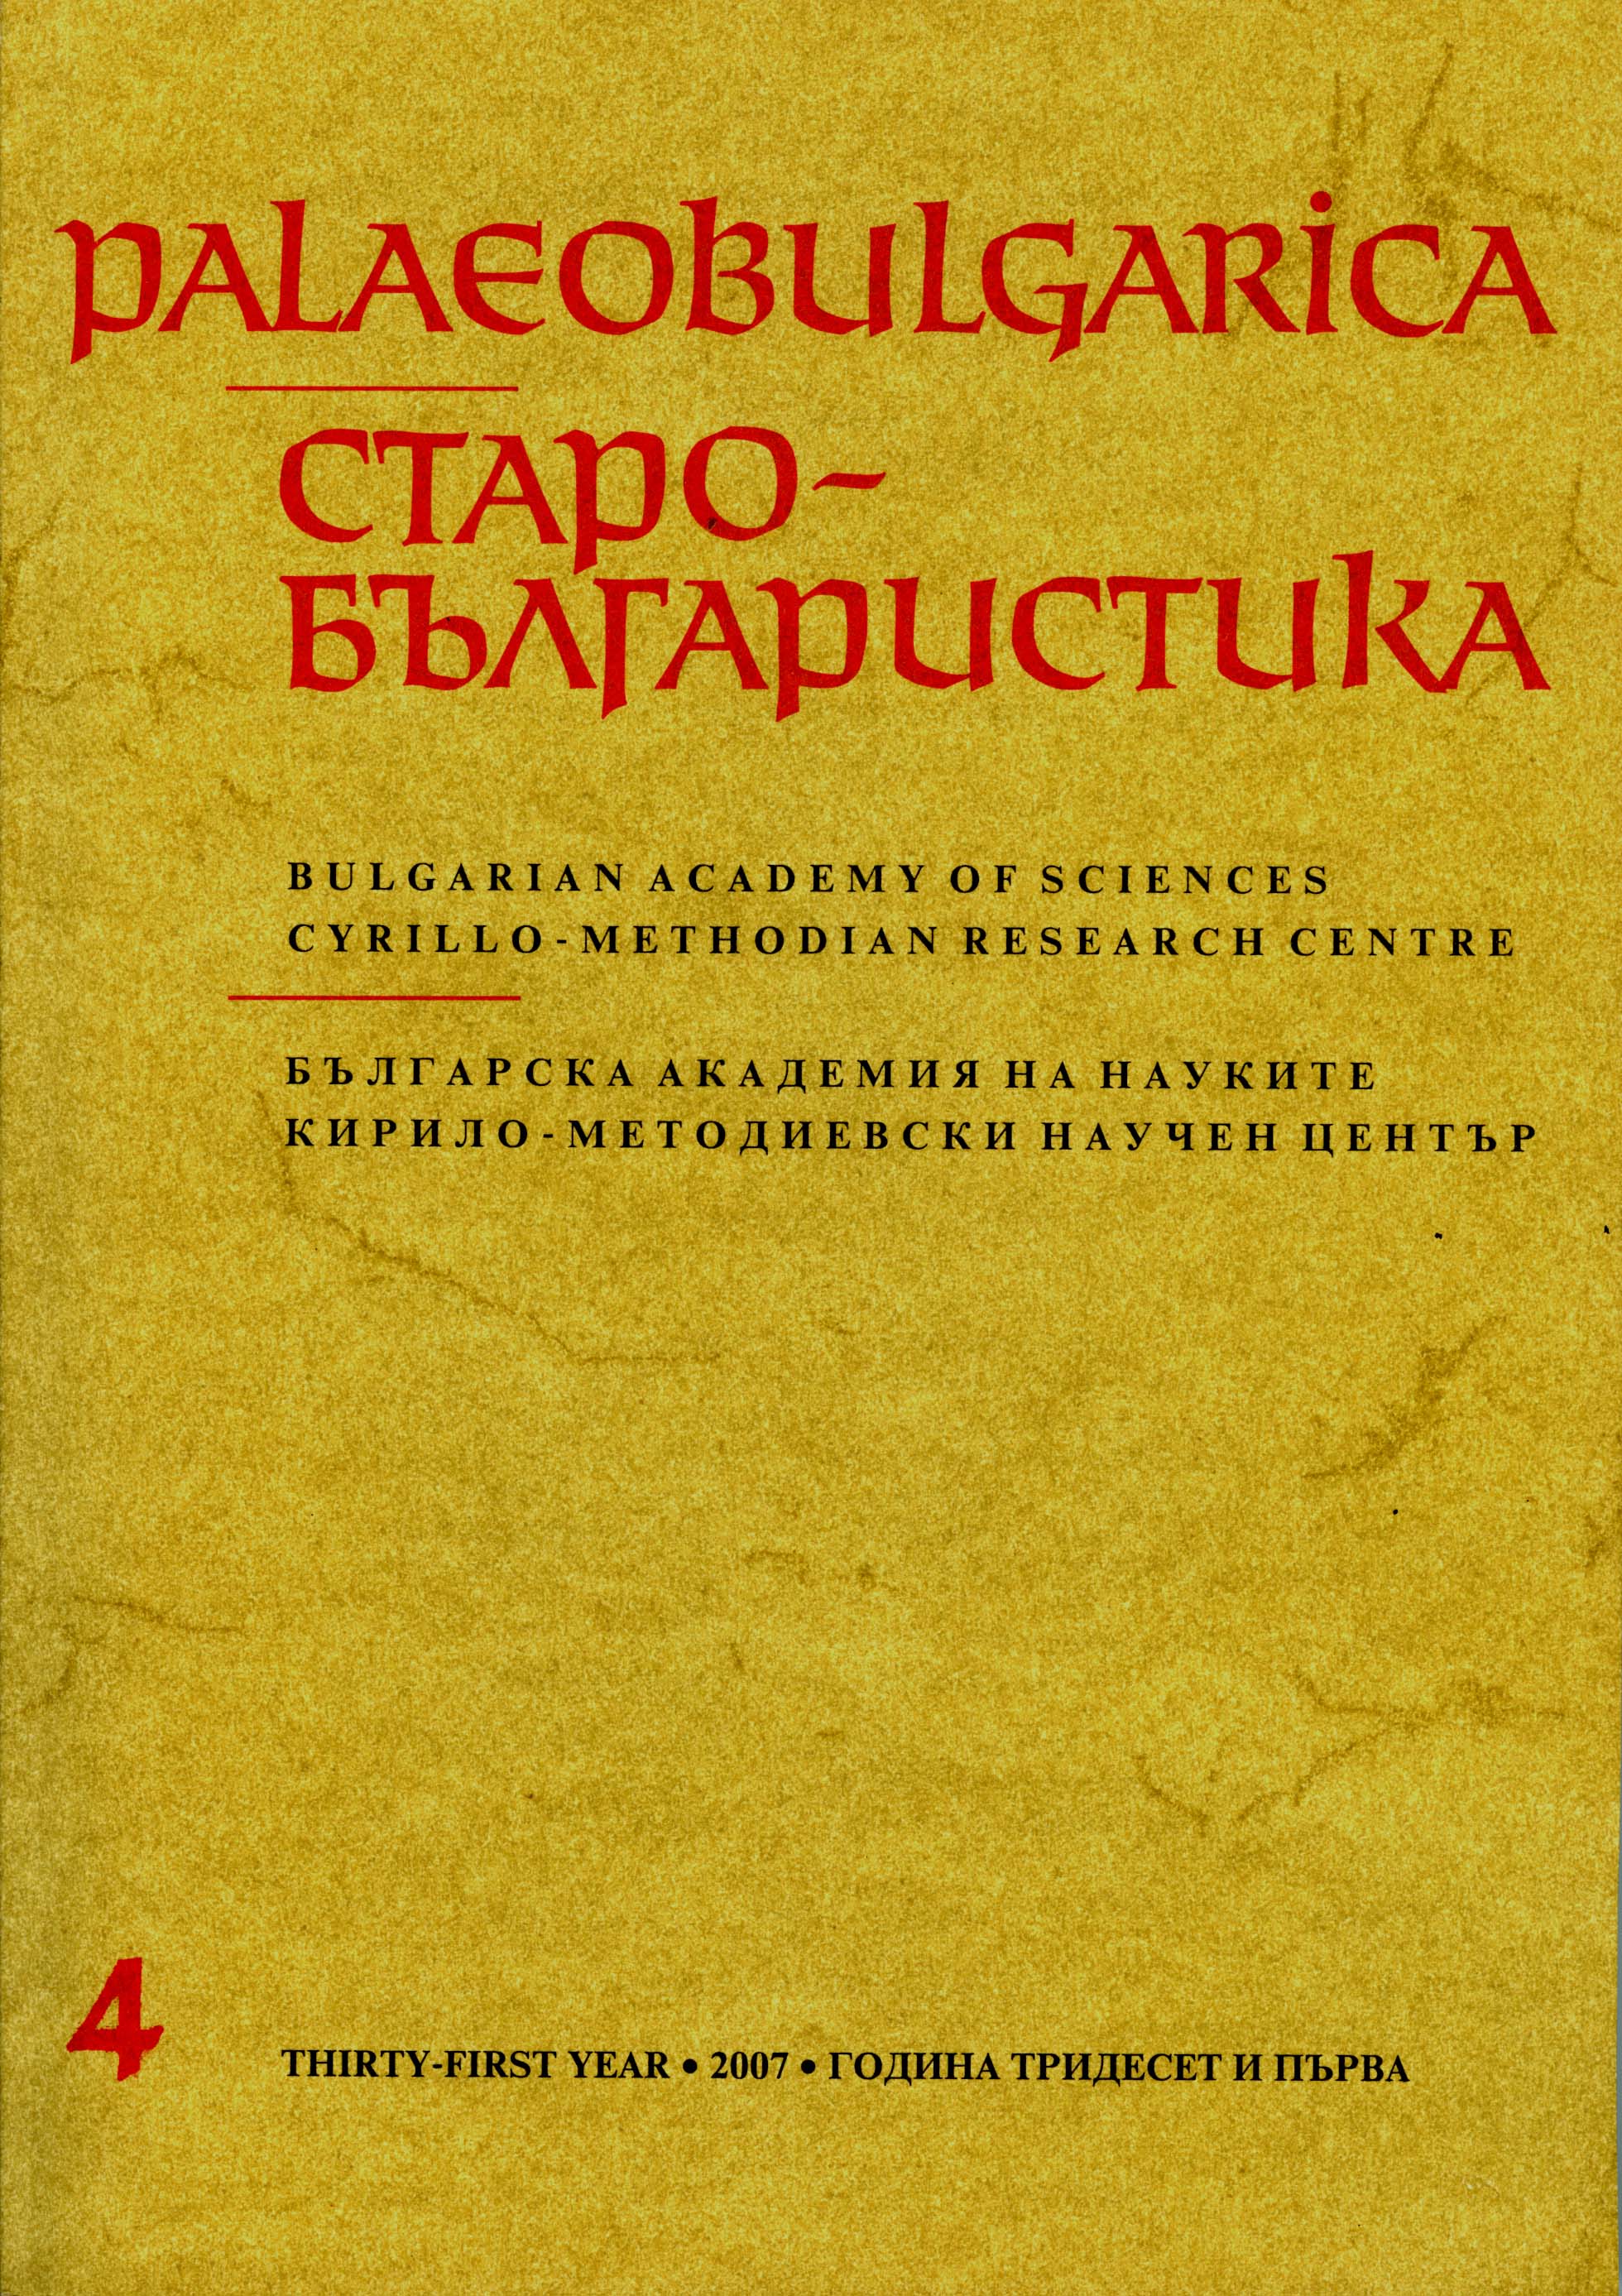 Изучаване на многократните преводи в южнославянската средновековна литература в контекста на текстовата традиция